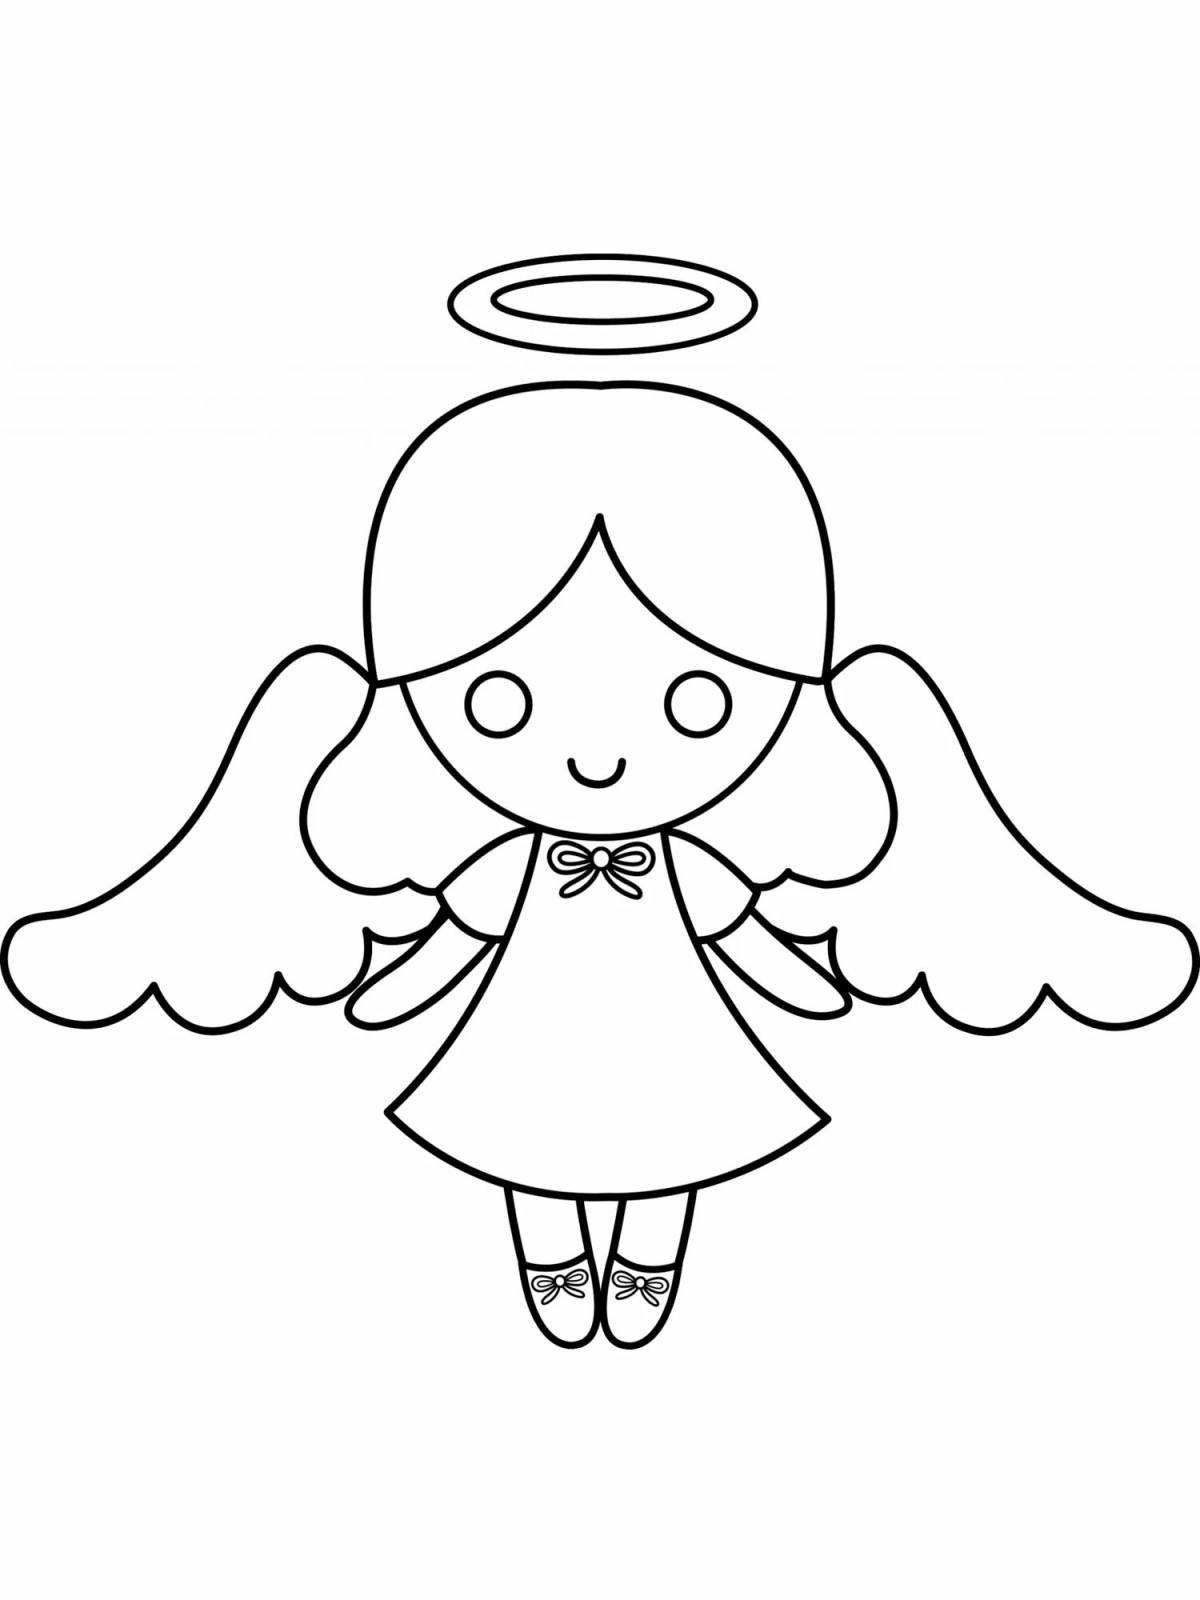 Ангельски-улыбающаяся раскраска девочка-ангелочек